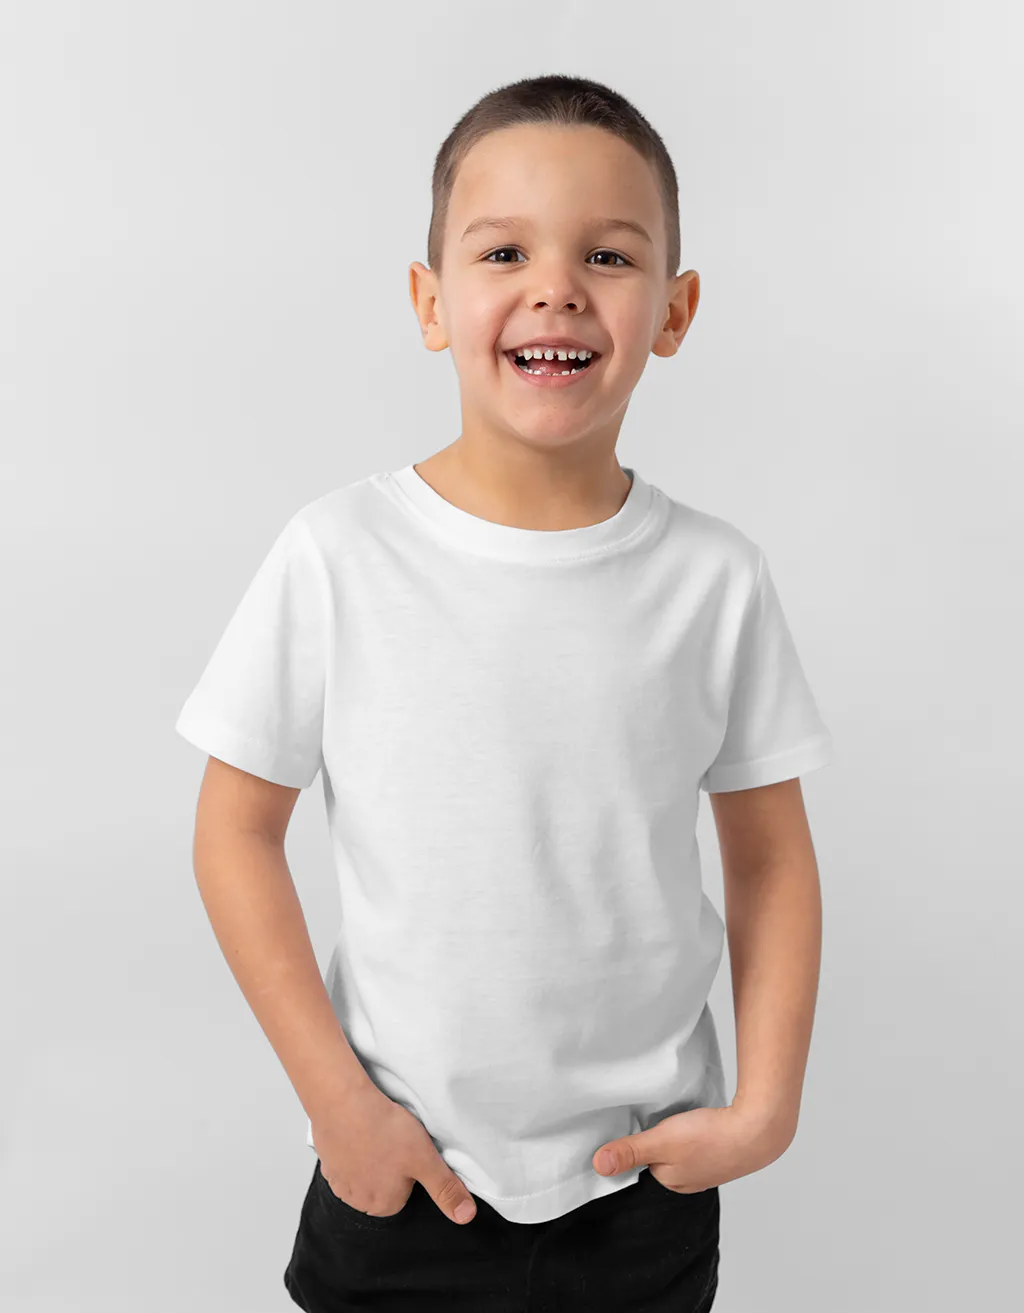 plain white t shirt for boys online india